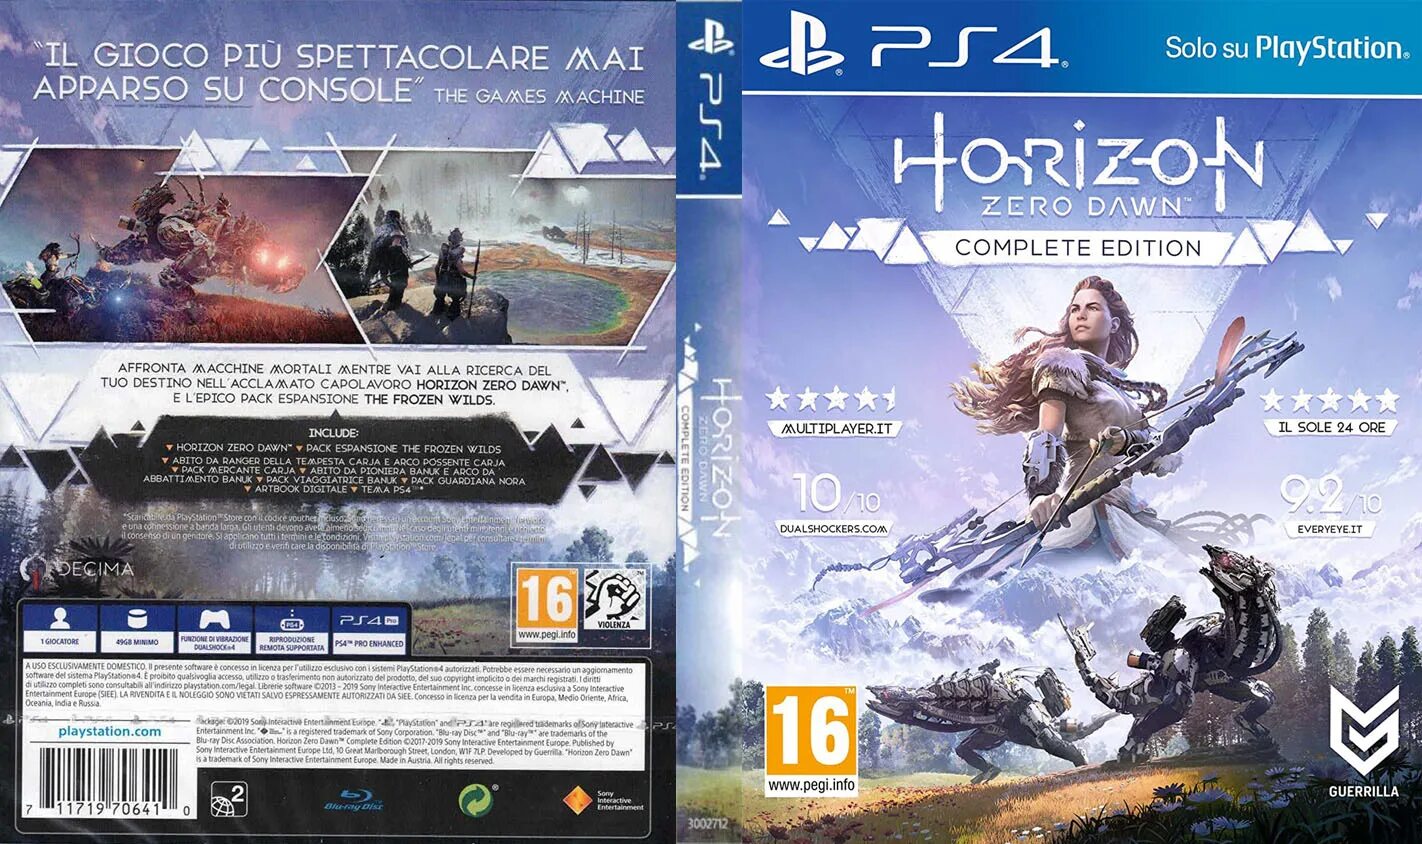 Complete edition game. Horizon Zero Dawn ps4 диск. Horizon Zero down ps4 диск. Хорайзон 2 диск. Horizon Zero Dawn диск пс4.